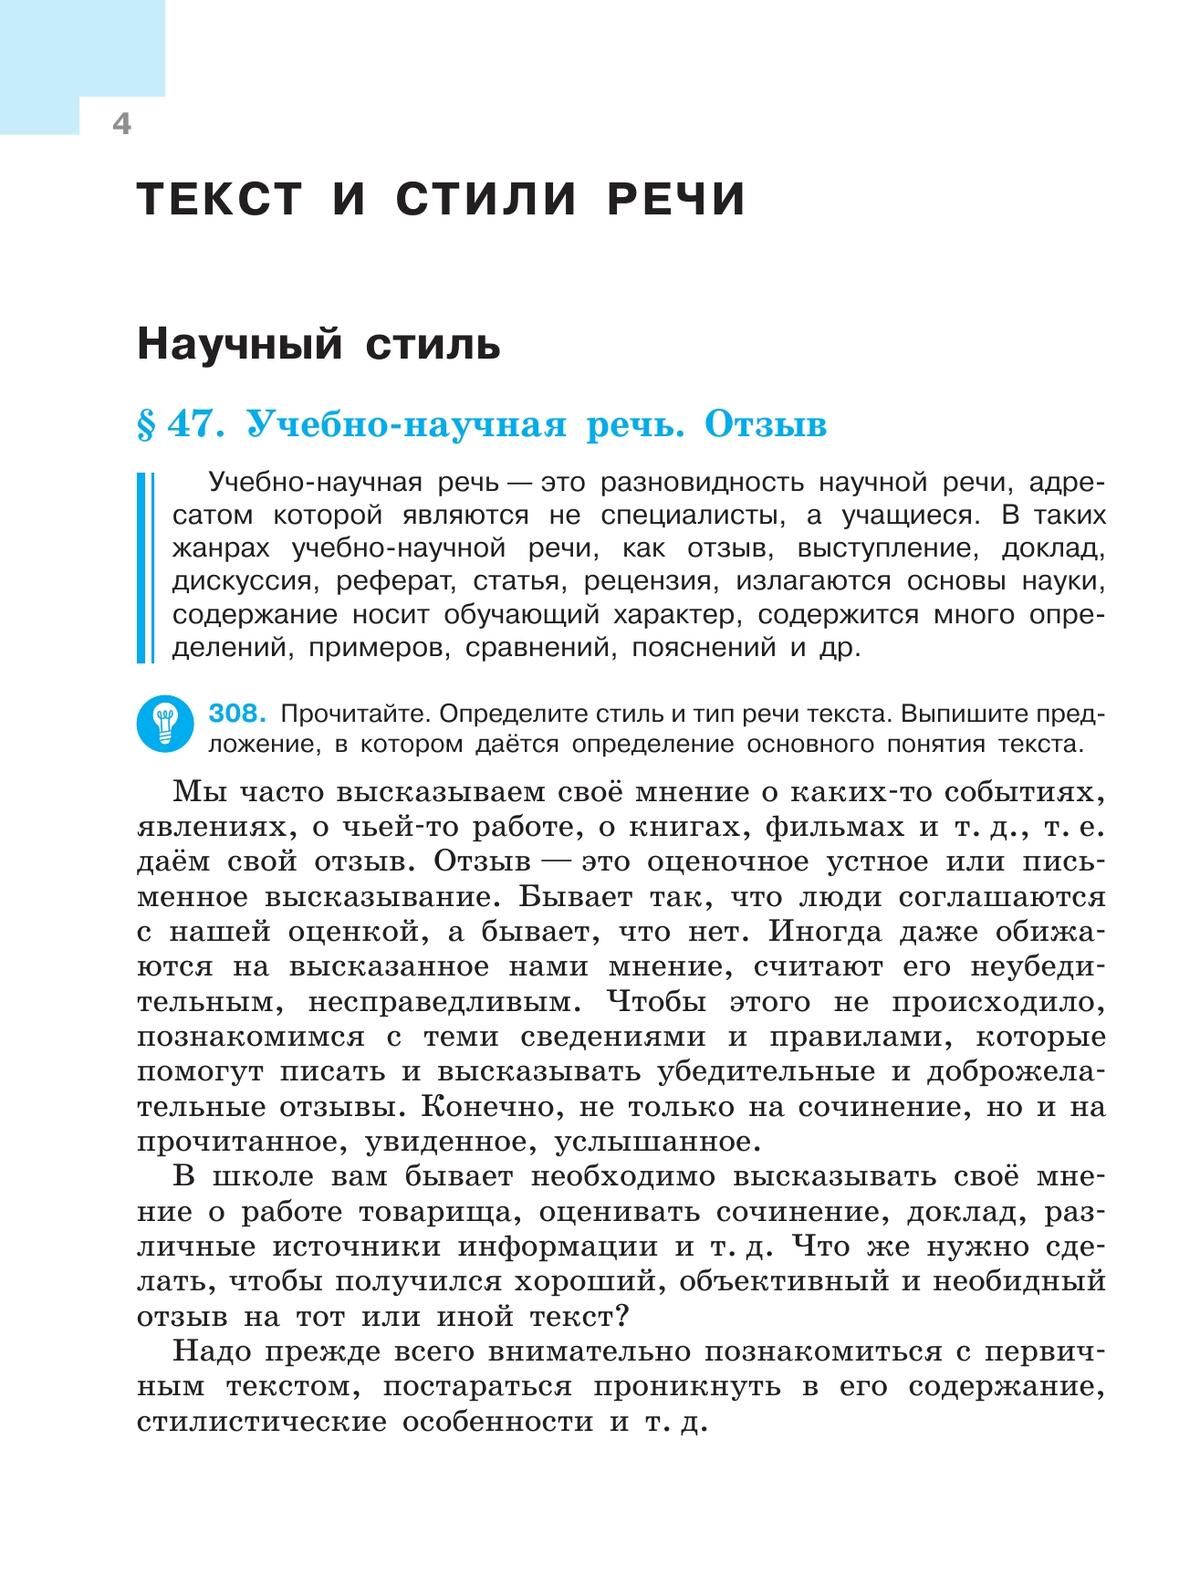 Русский язык. 7 класс. Учебник. В 2 ч. Часть 2 2